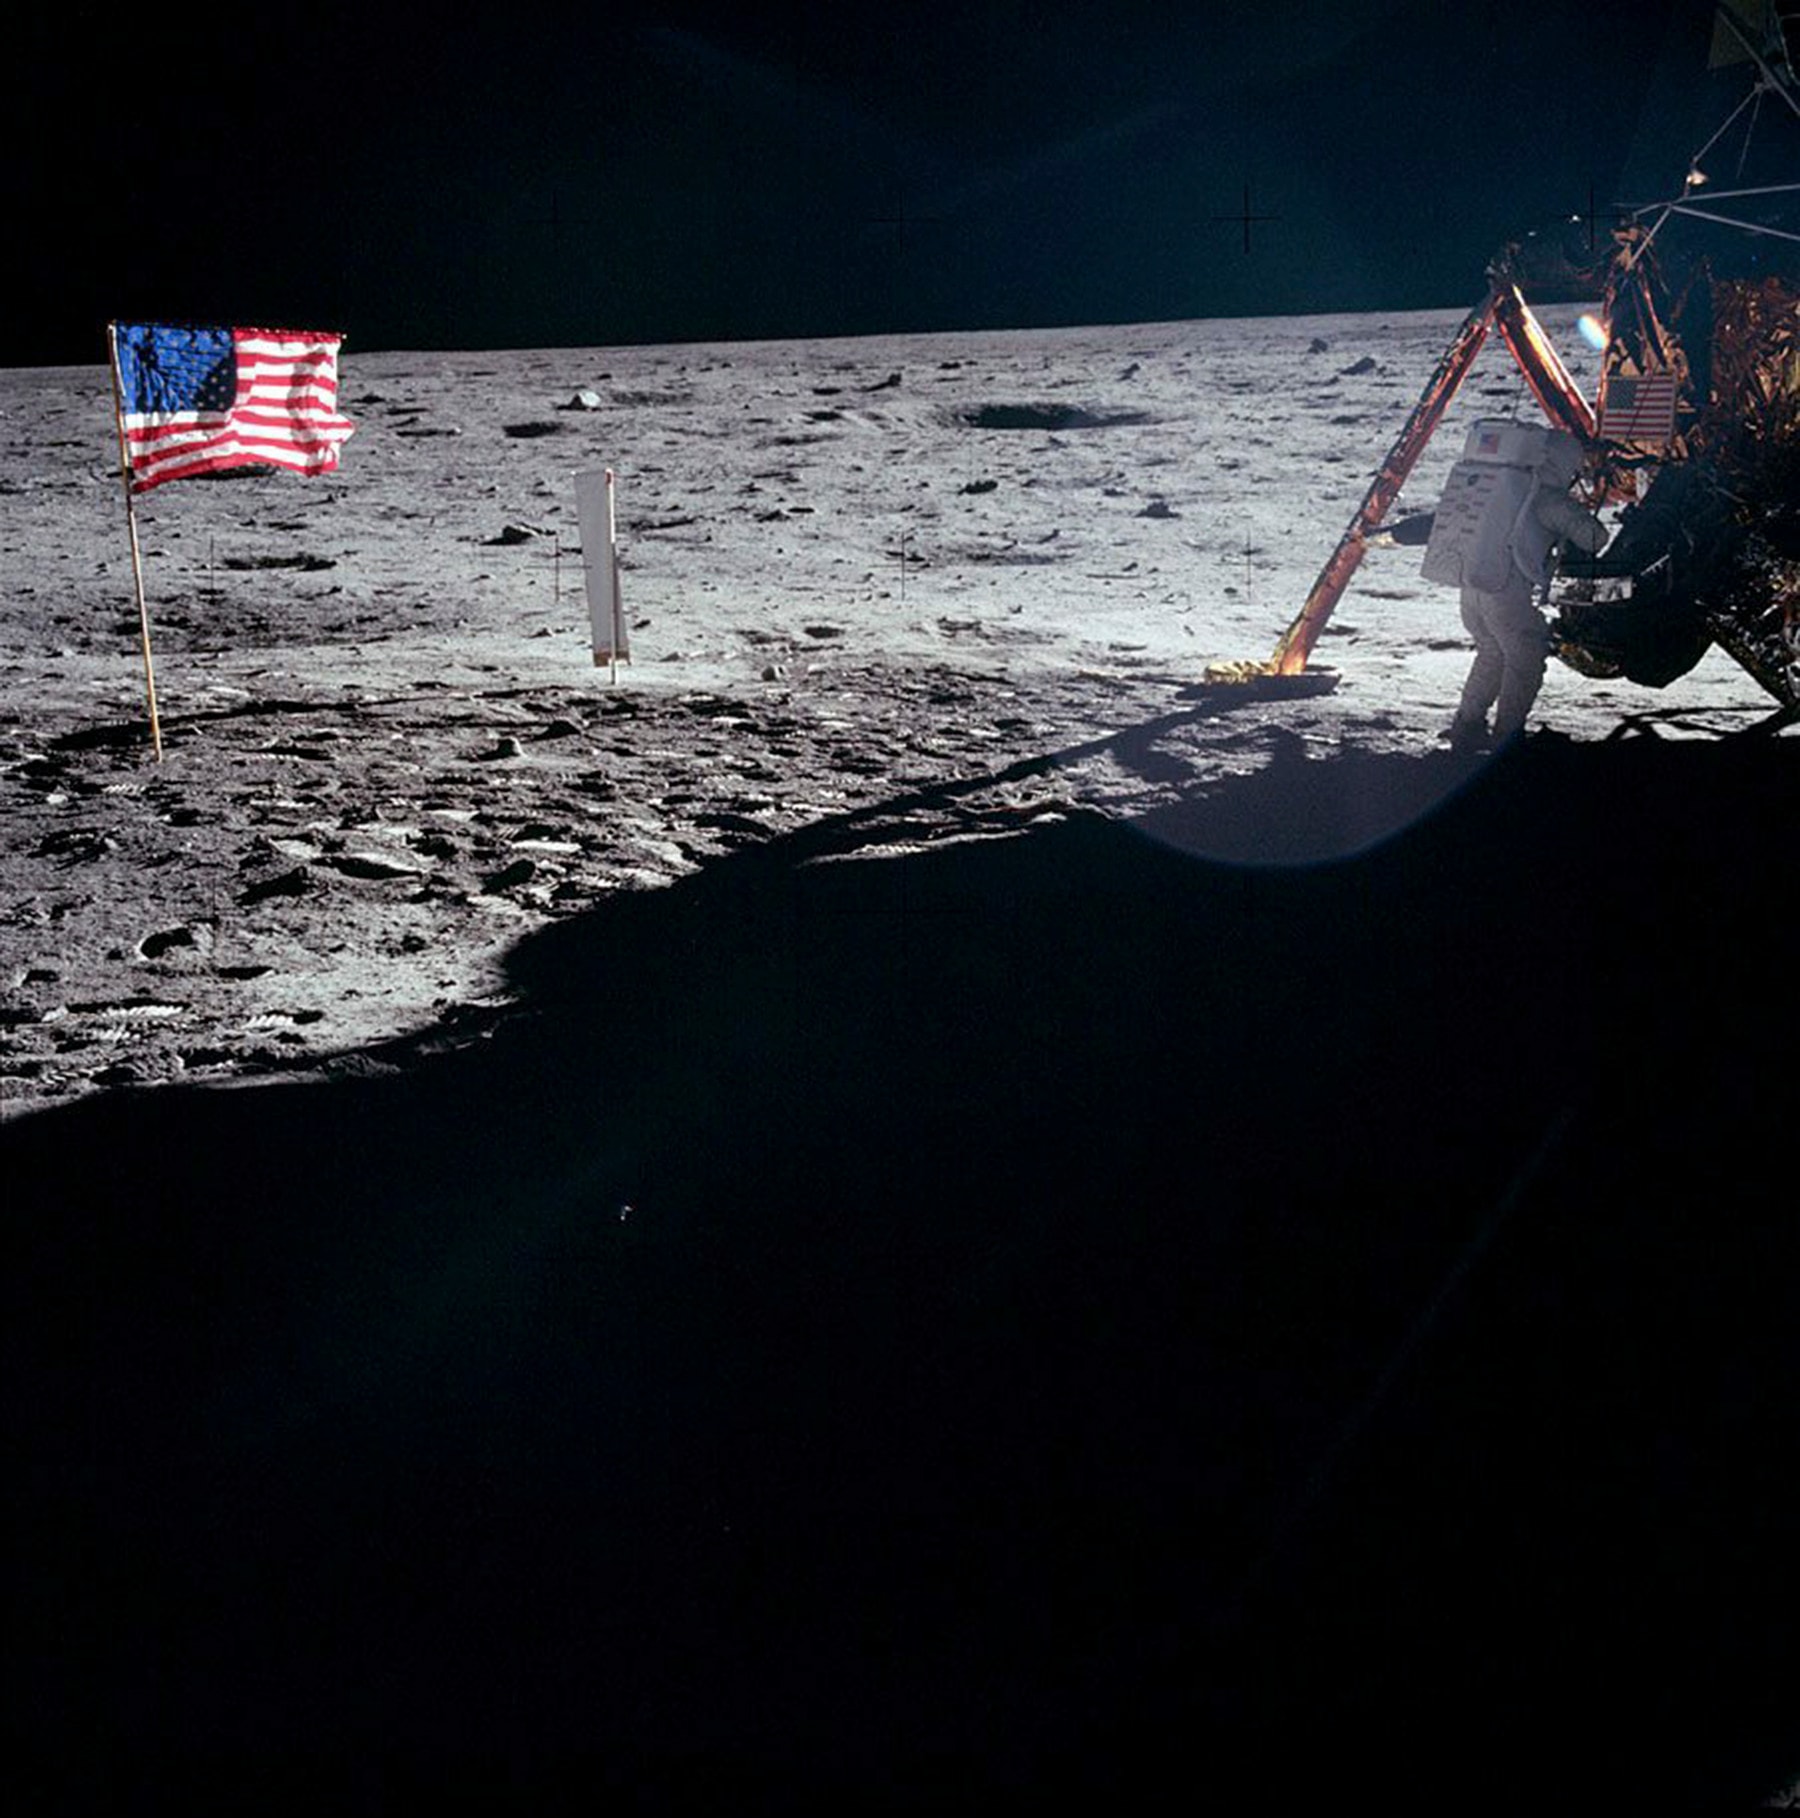 Una prospettiva differente degli astronauti e del modulo lunare